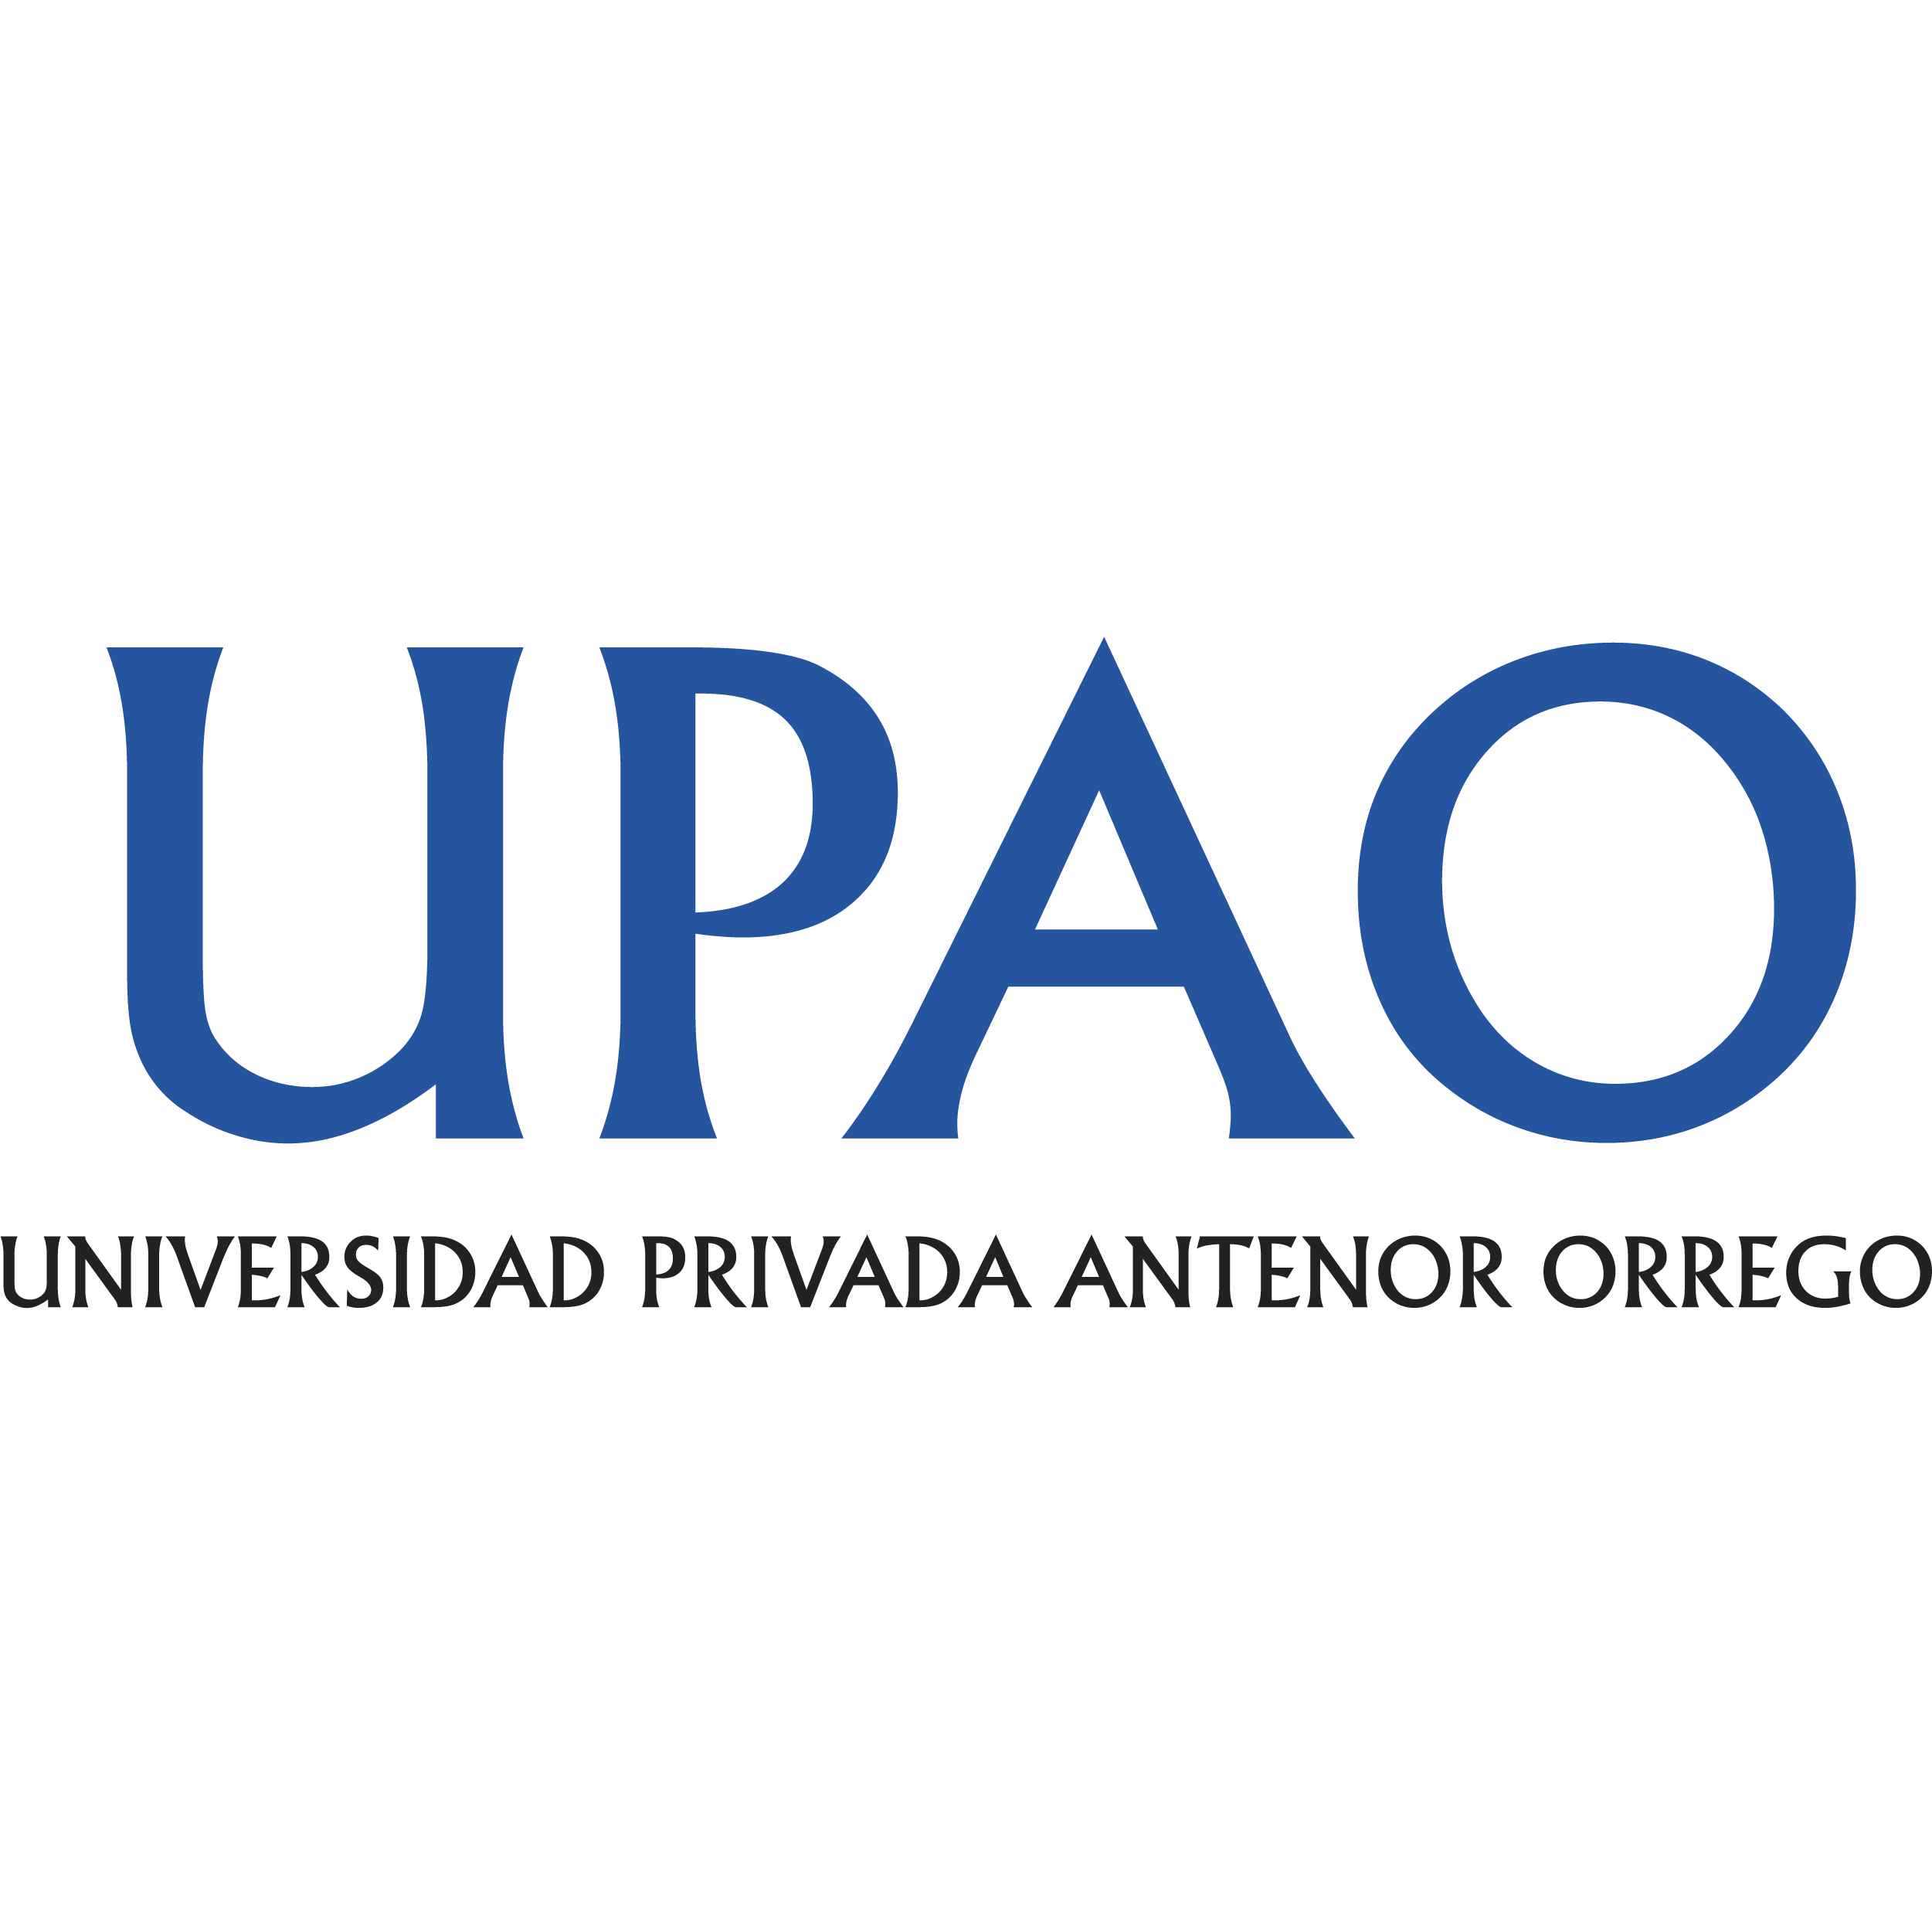 Logo UPAO